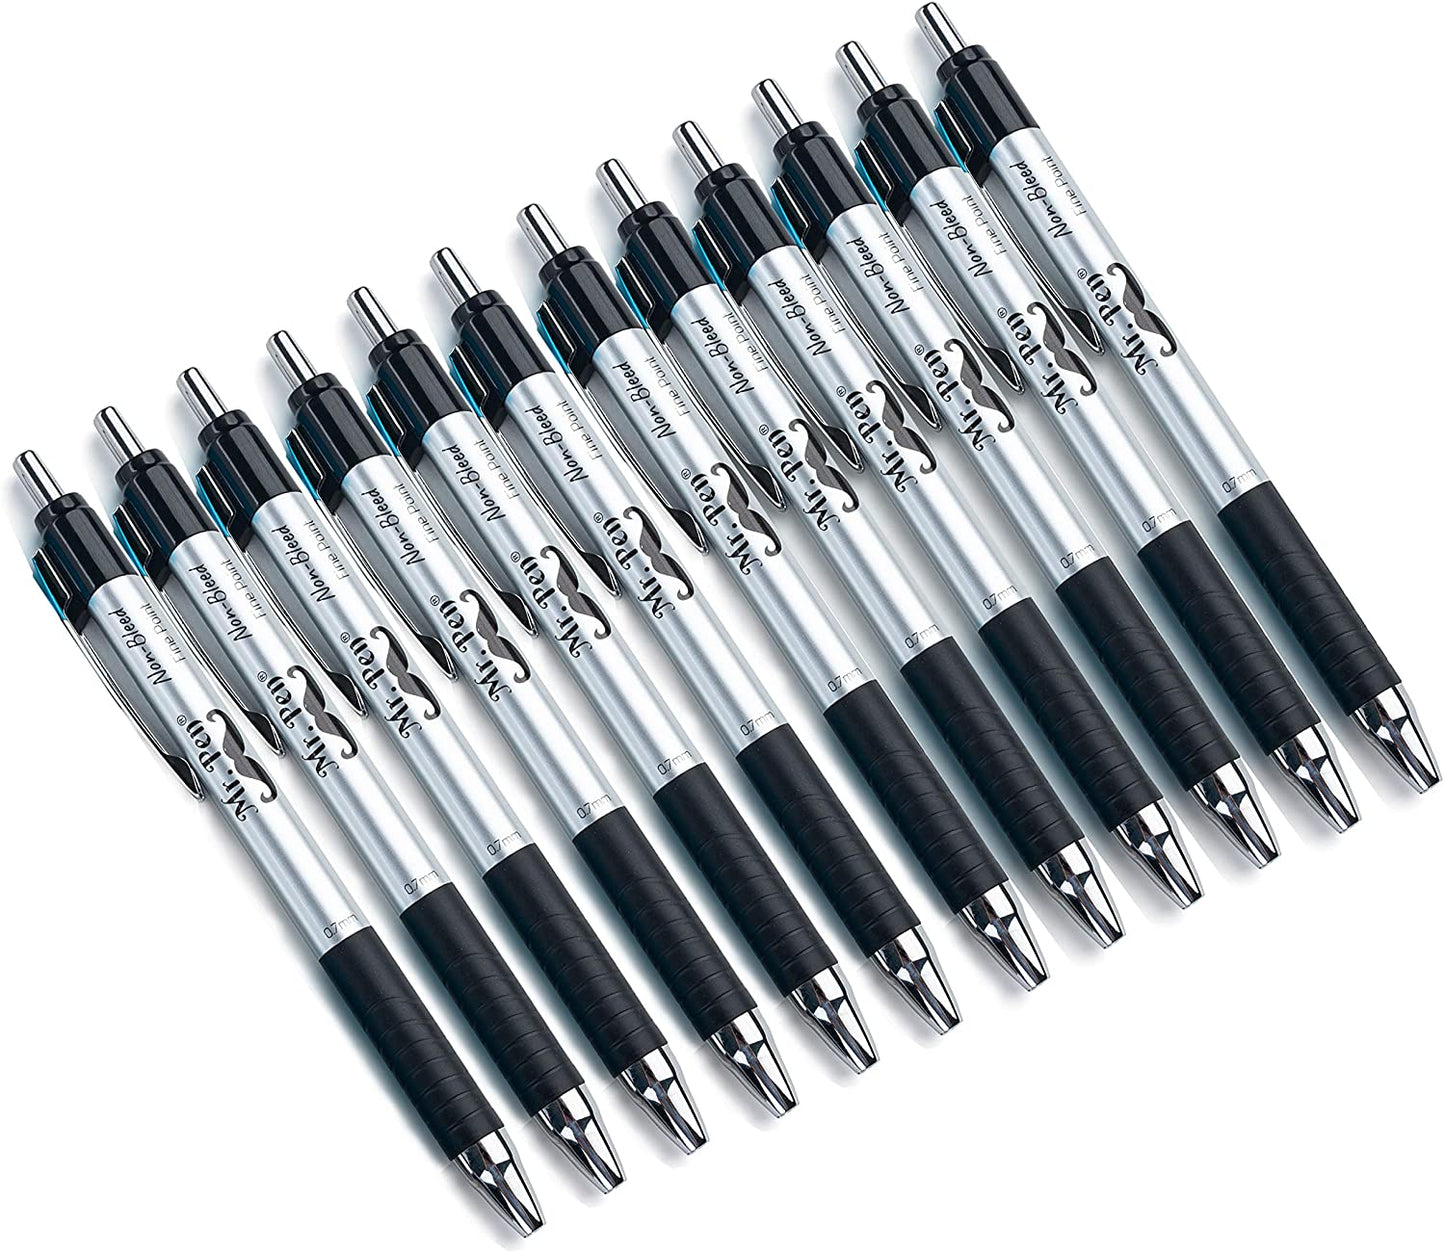 Mr. Pen- Pens, Black Pens, 12 Pack, Fast Dry